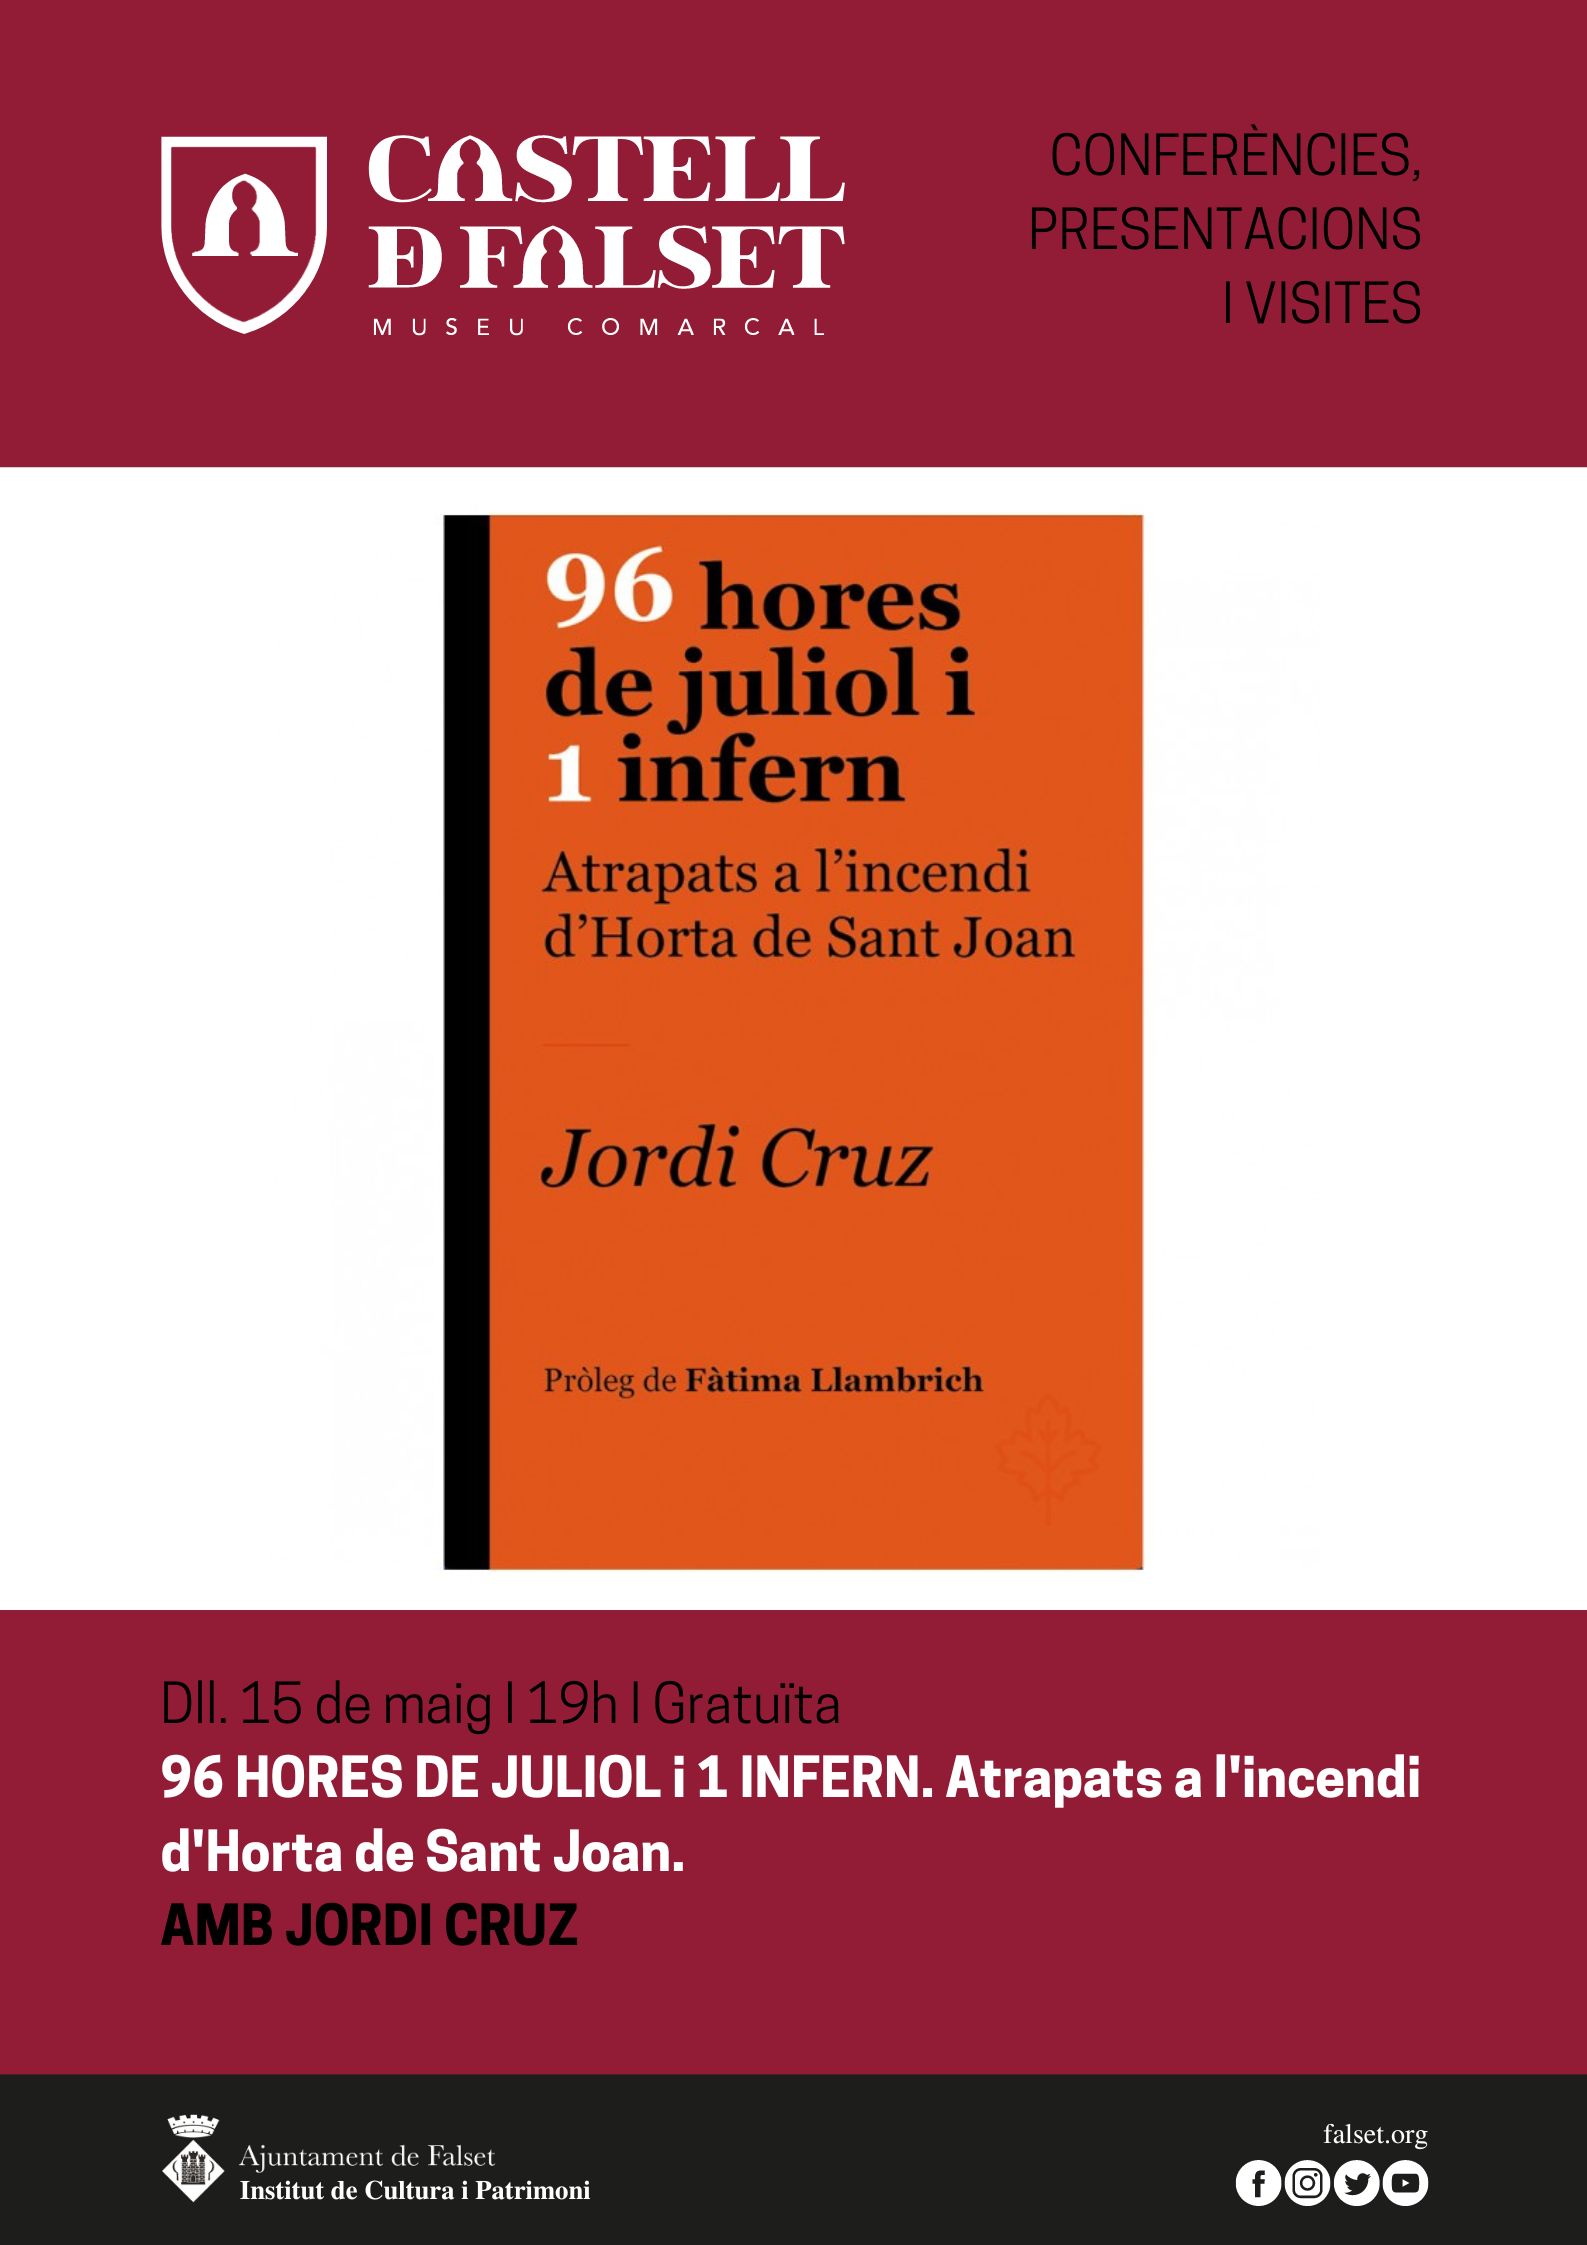 Presentació del llibre "96 hores de juliol i 1 infern. Atrapats a l'incendi d'Horta de Sant Joan" amb l'autor Jordi Cruz